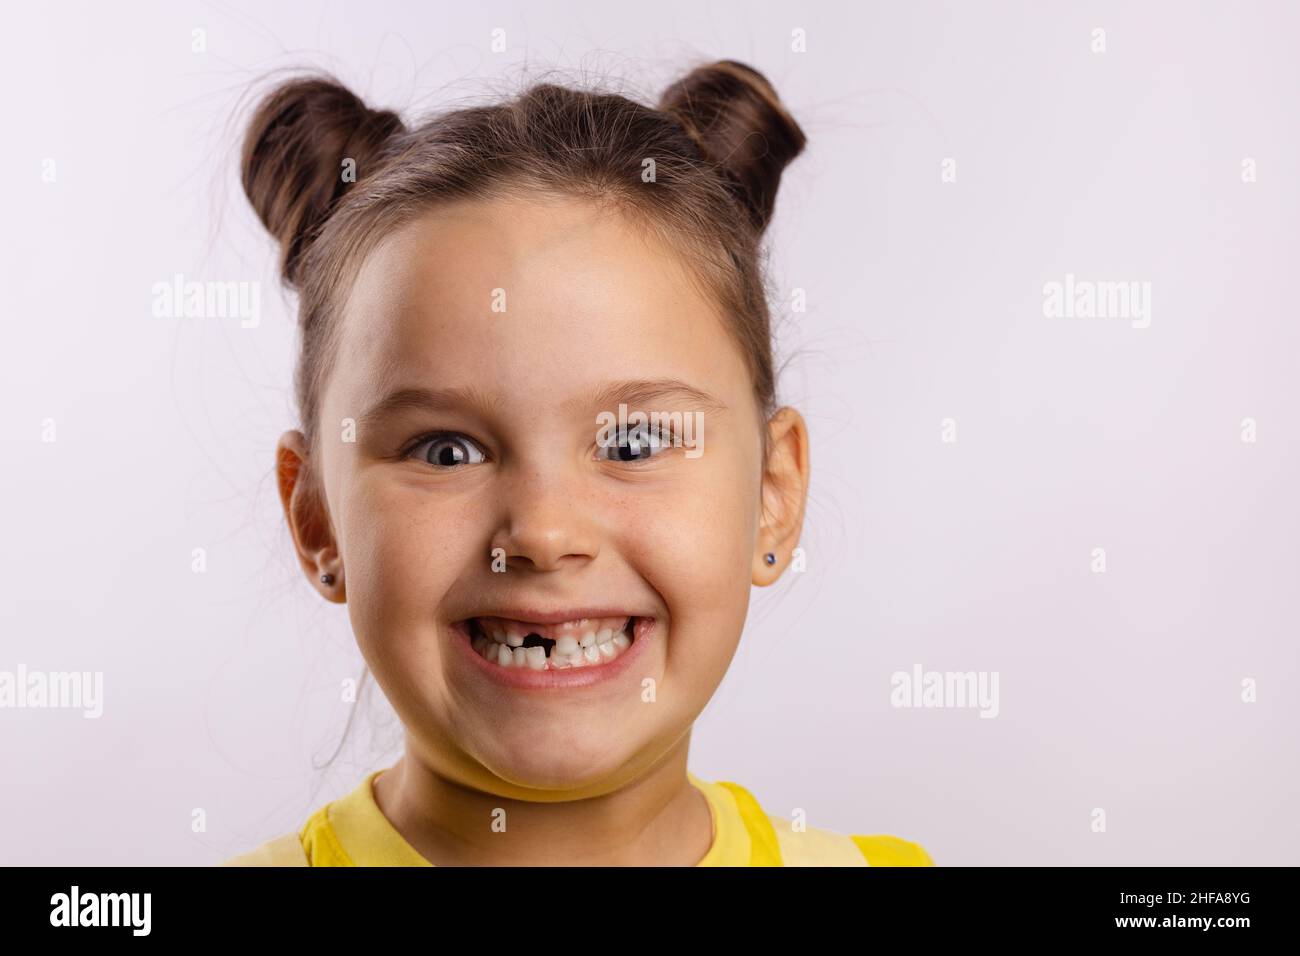 Une jeune fille trop excitée souriant avec des dents avec une dent de lait avant manquante regardant l'appareil photo sur fond blanc.Changement de dents d'abord aller chez le dentiste Banque D'Images